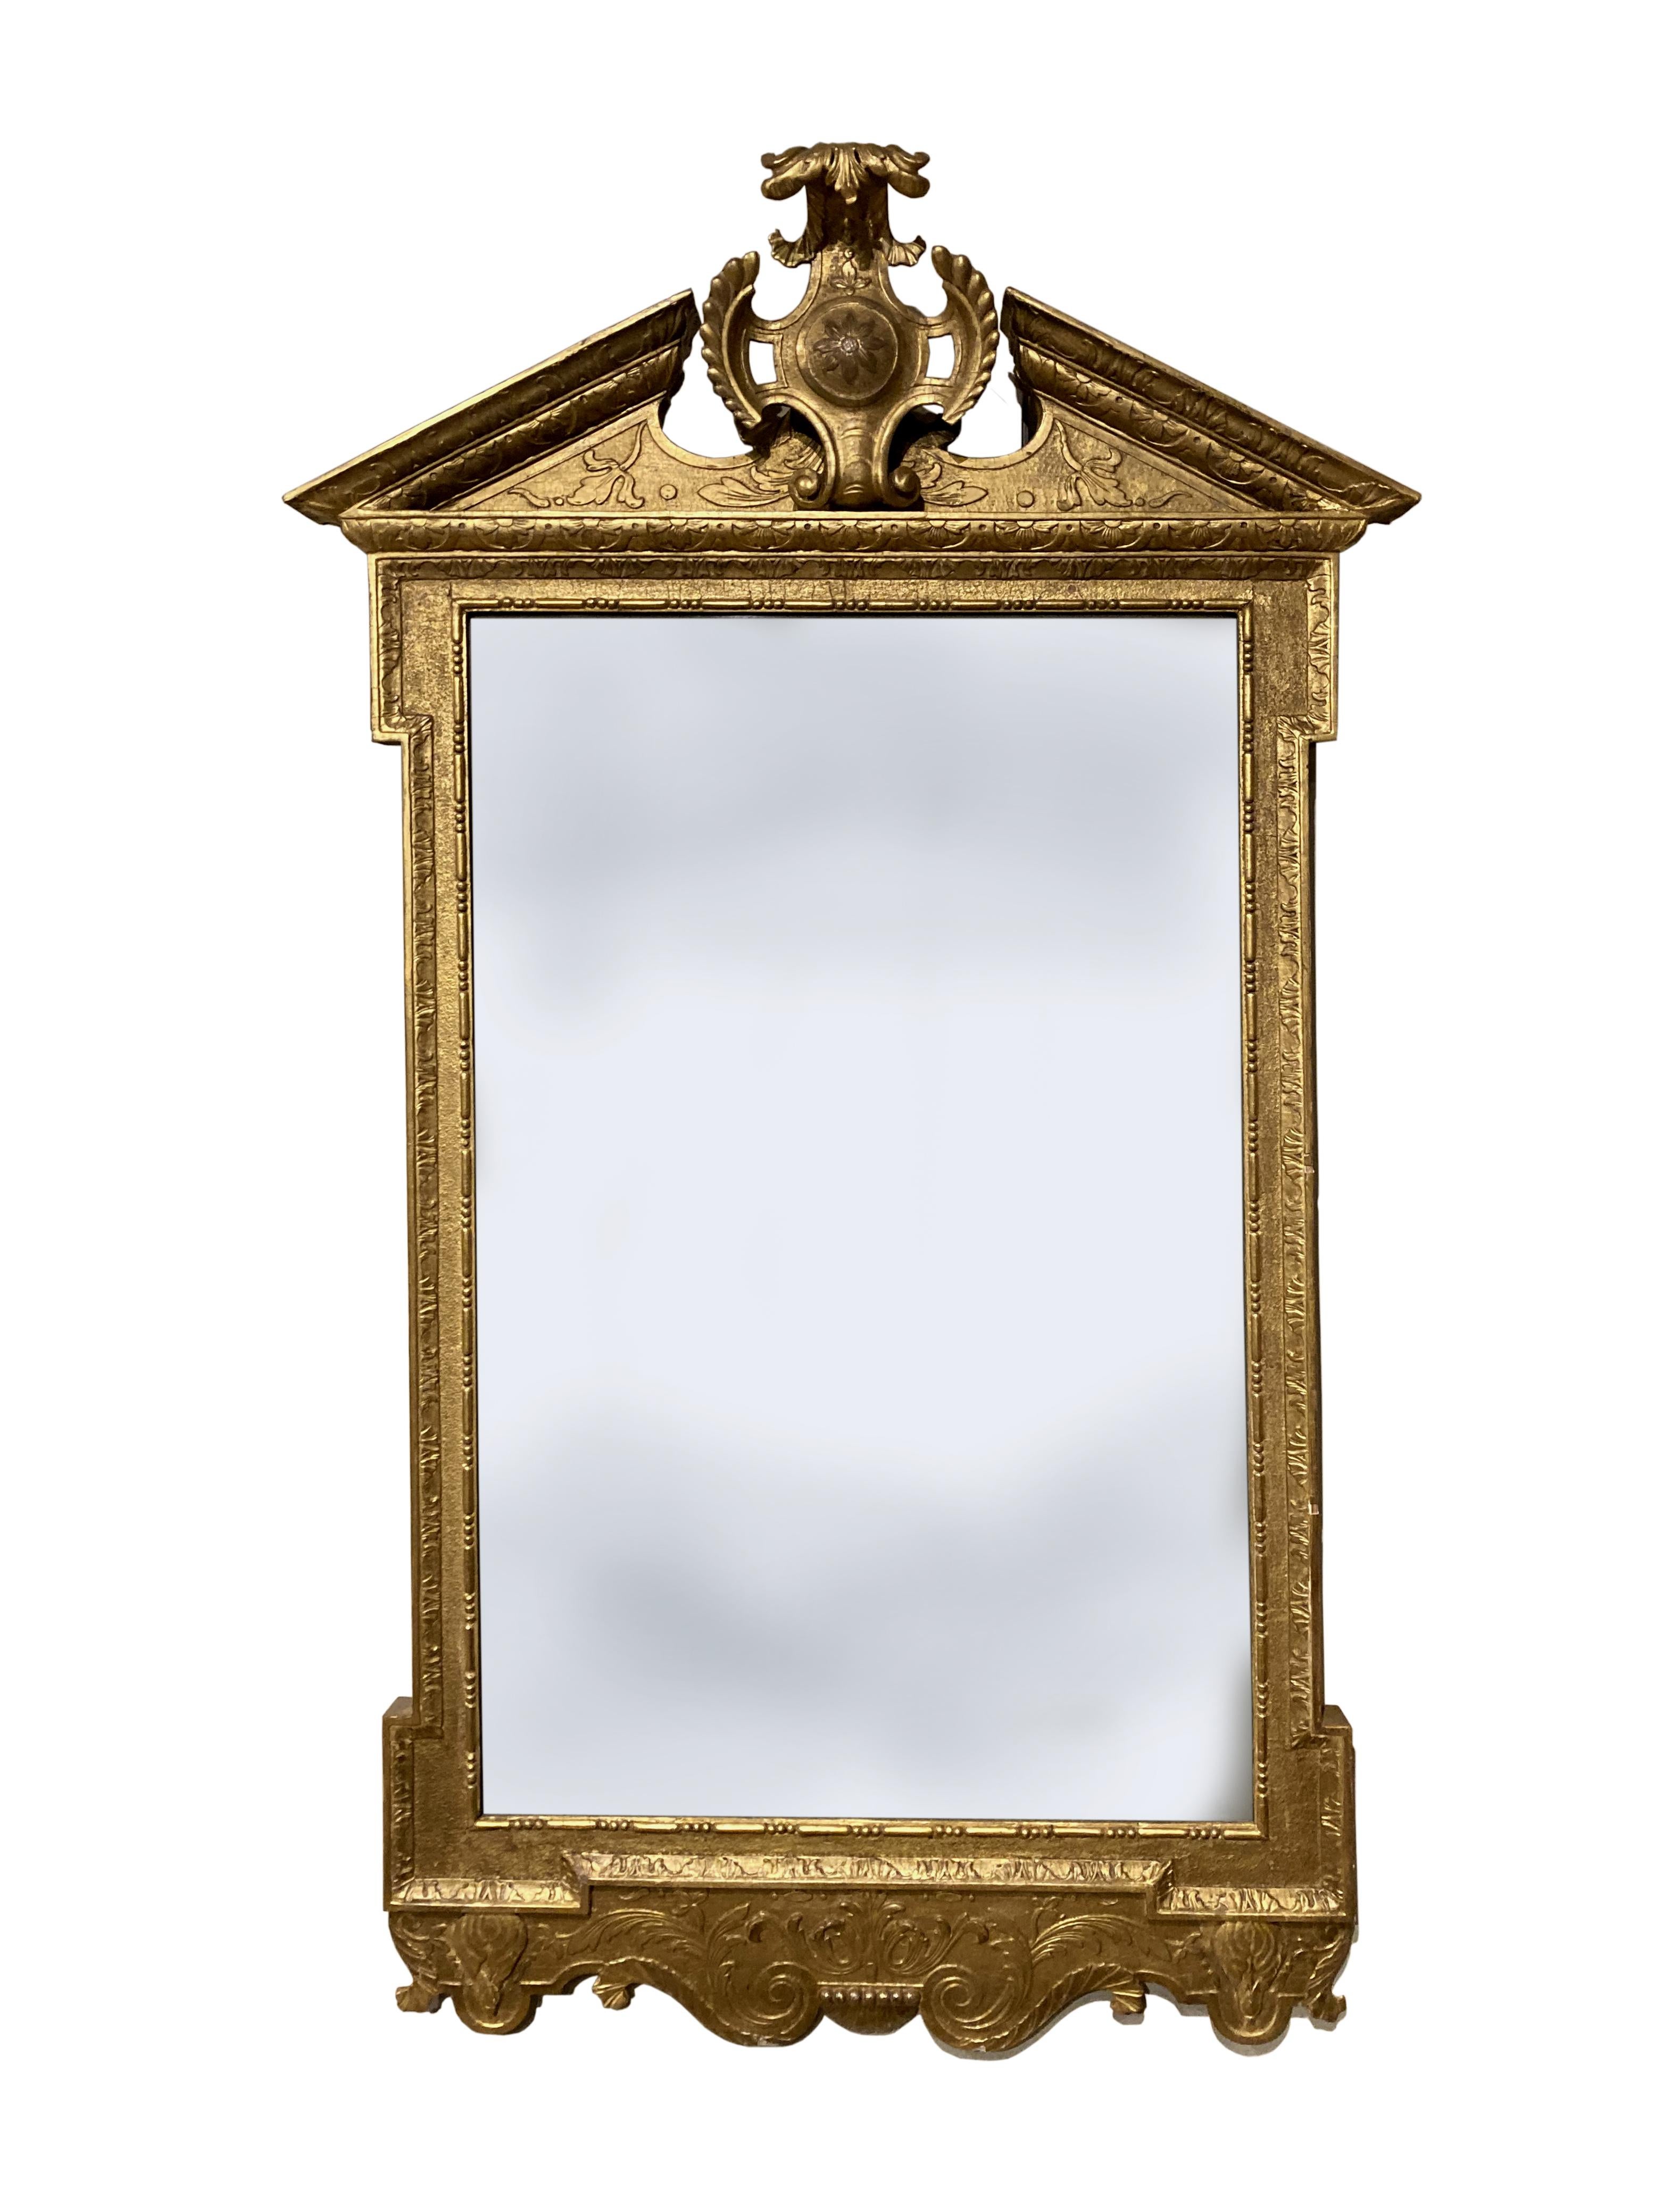 Ein seltenes Paar früher georgianischer Gesso-Spiegel, hauptsächlich in ihrer ursprünglichen Vergoldung; die Platten sehen original aus, wurden aber wahrscheinlich vor einiger Zeit ersetzt; eine fein geschnitzte Kartusche in der Mitte des